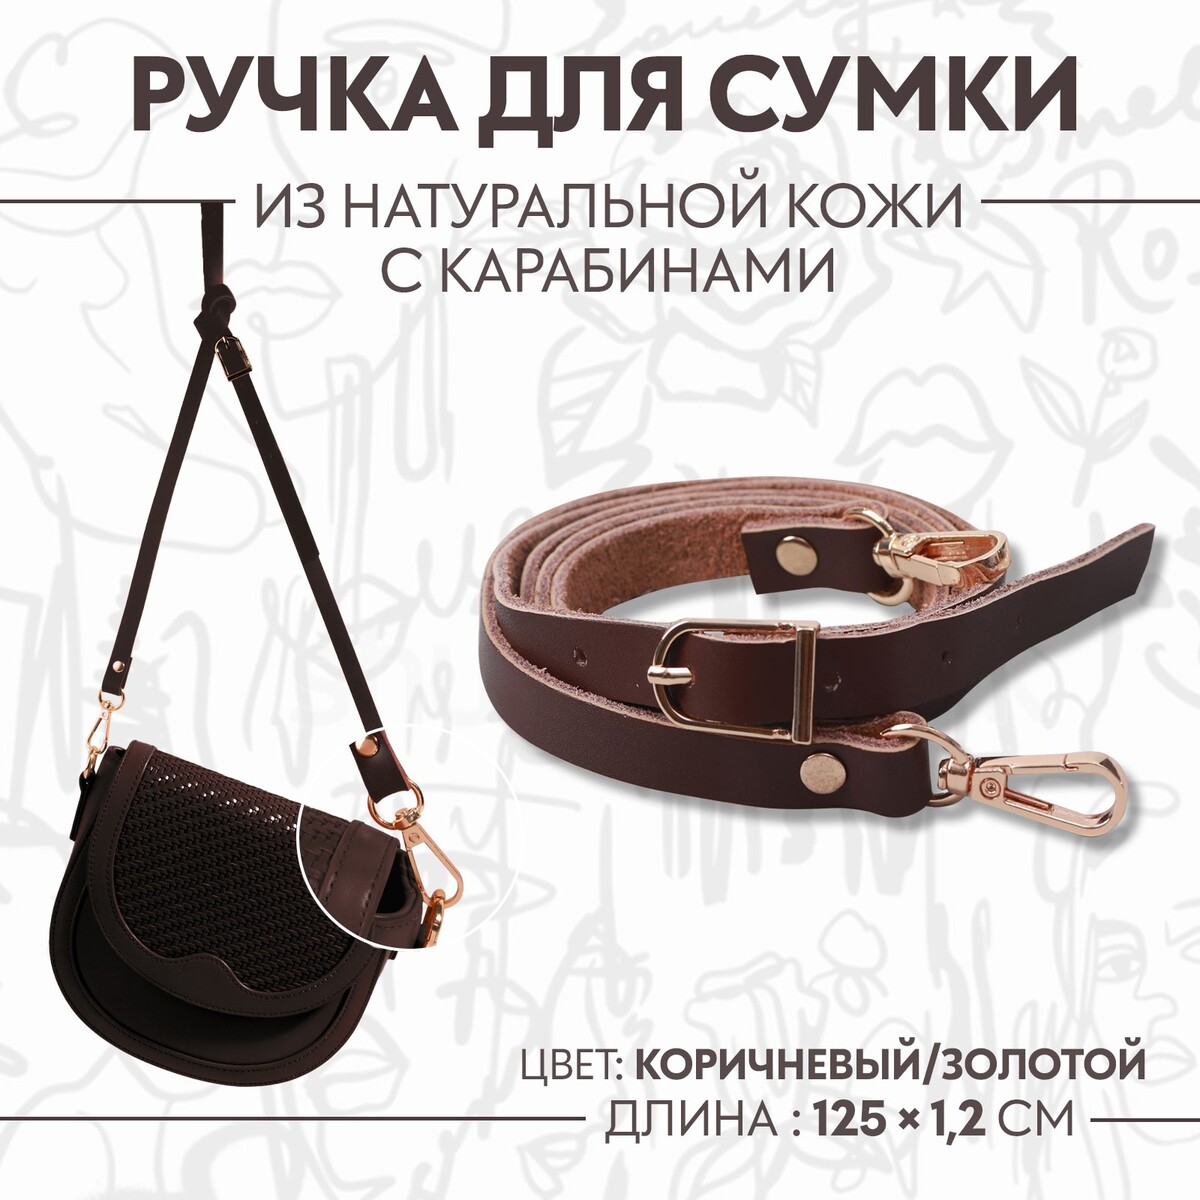 Ручка для сумки из натуральной кожи, с карабинами, 125 × 1,2 см, цвет коричневый ручка шнурок для сумки с карабинами 120 × 0 6 см коричневый